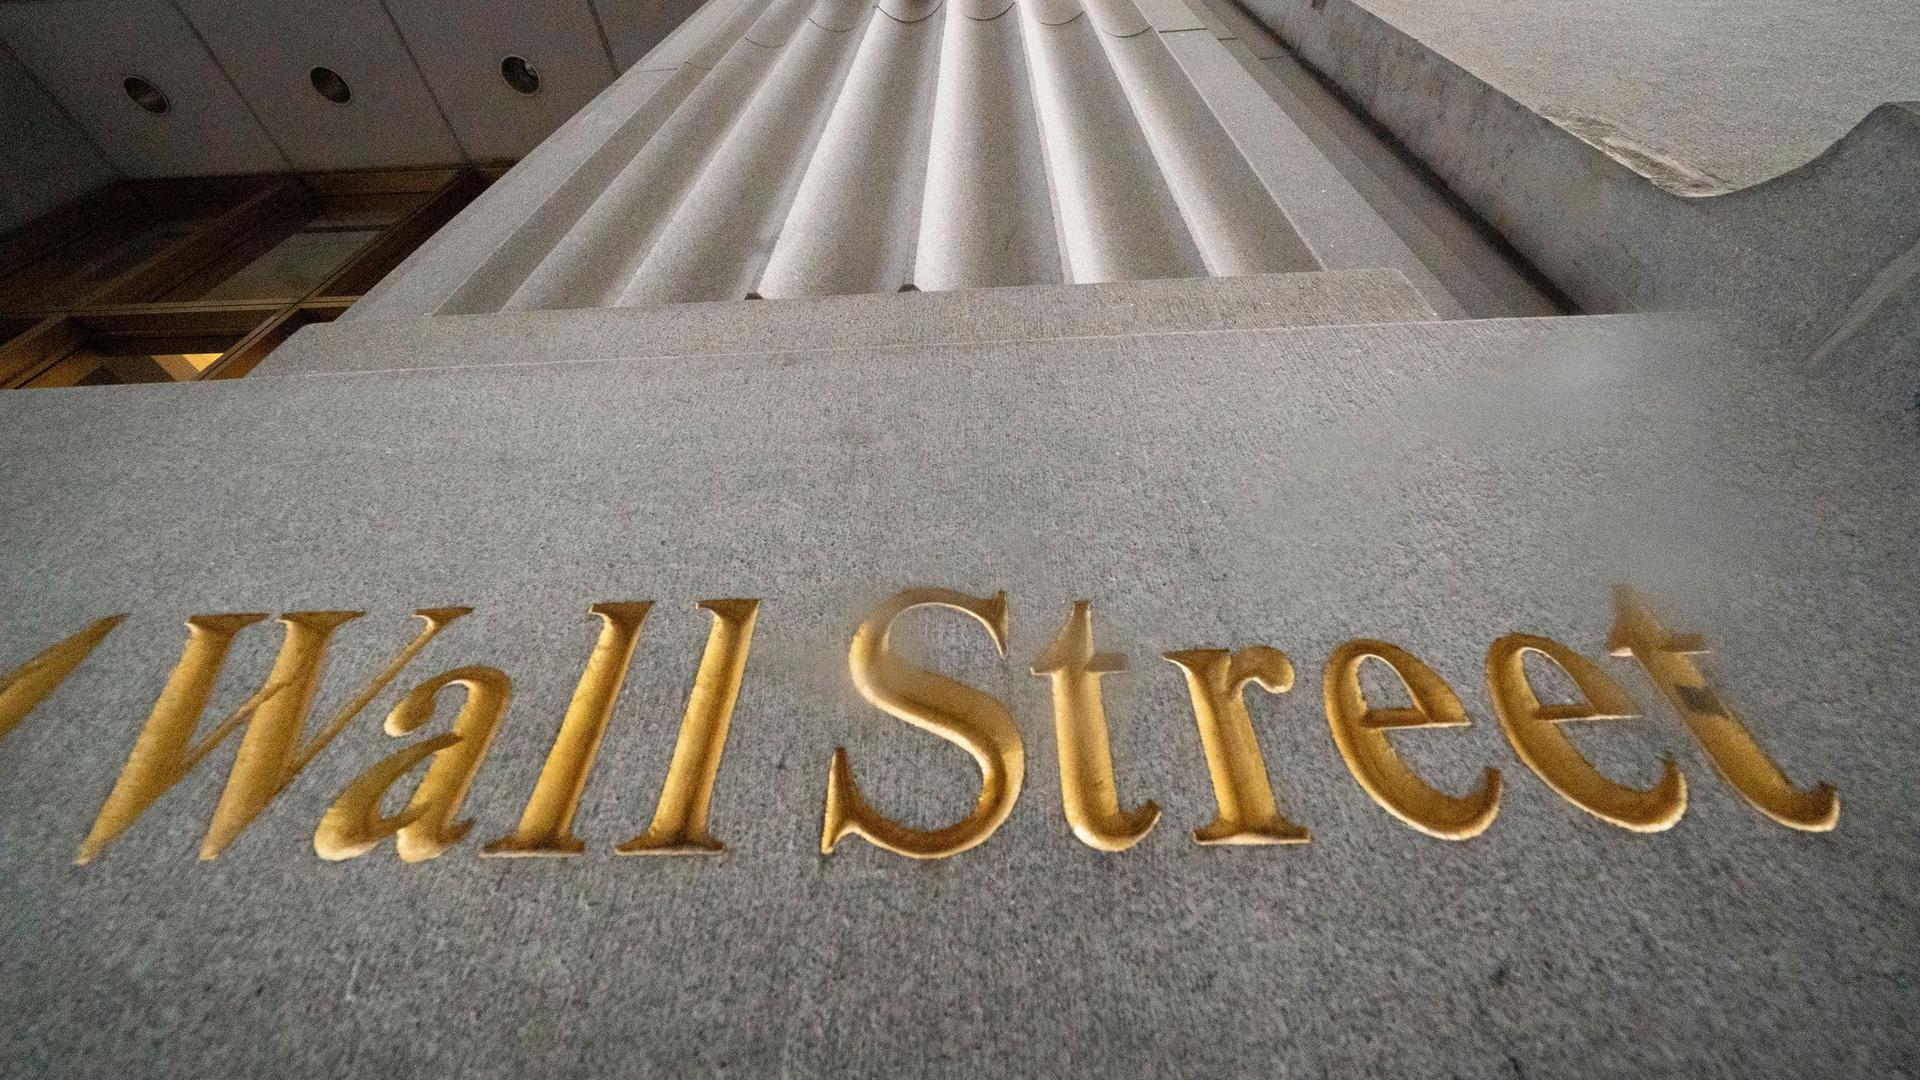 „Wall Street“ steht geritzt an der Fassade eines Gebäudes.